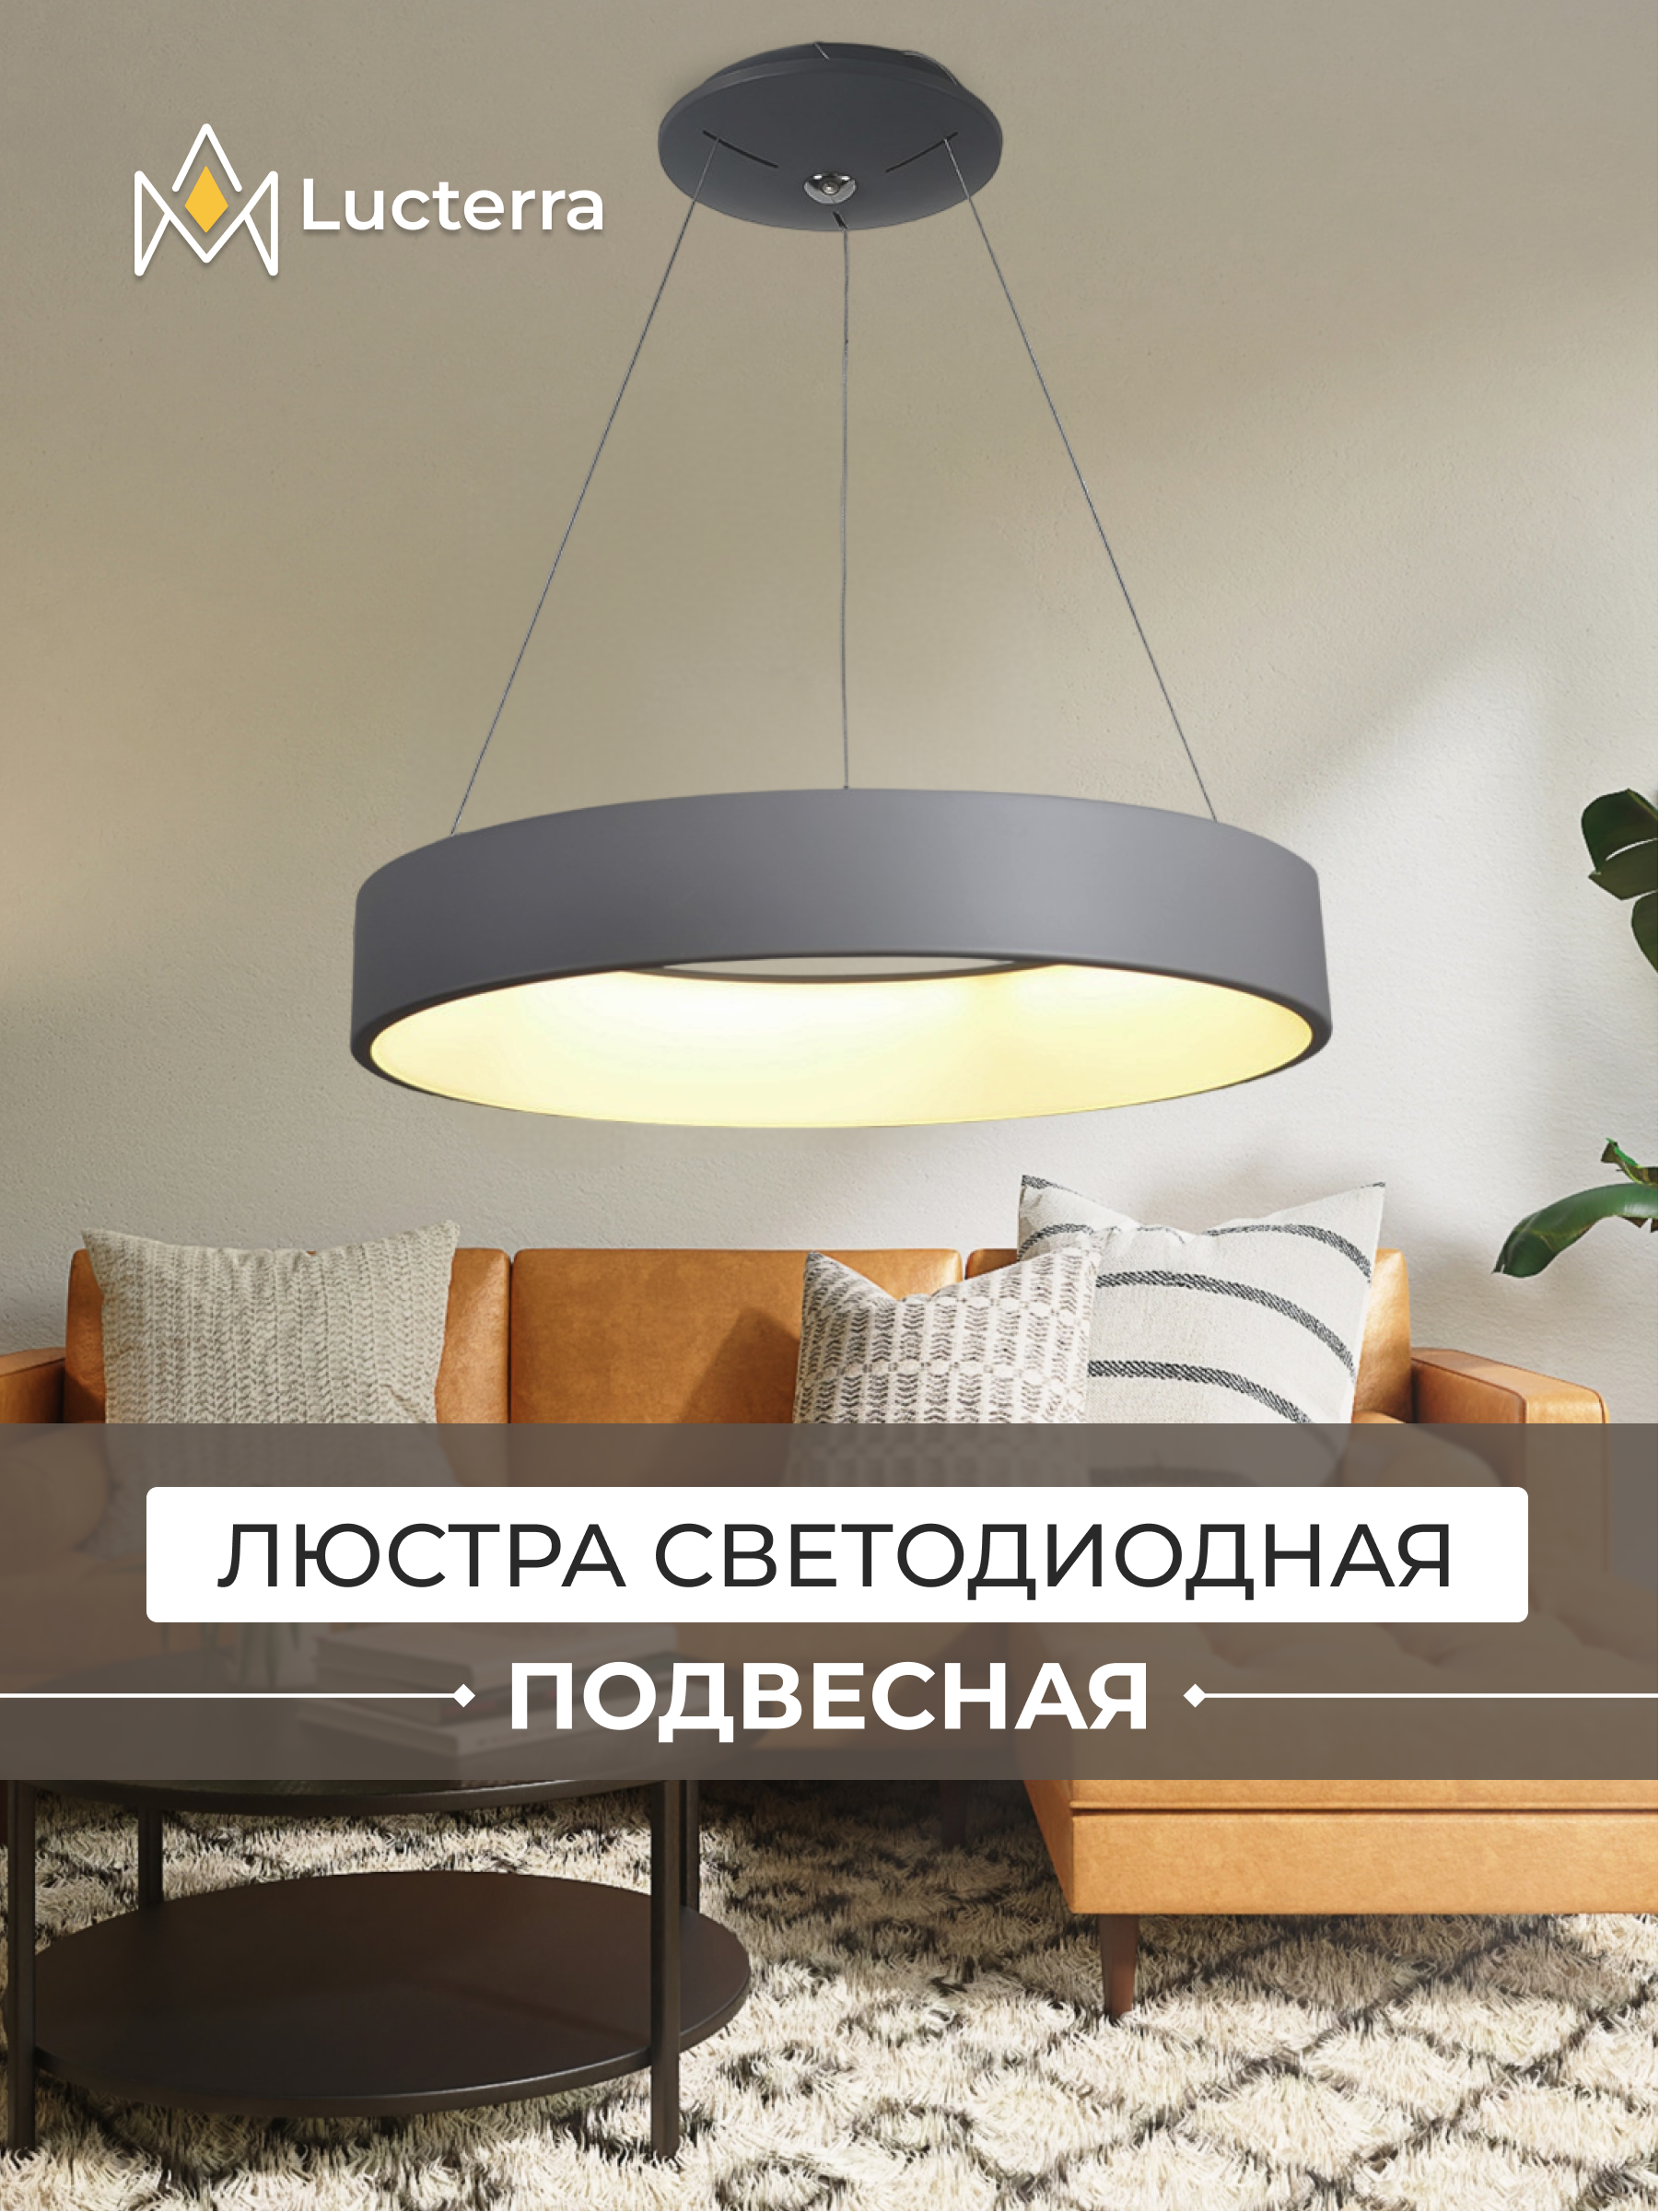 Типы освещения для дома или офиса